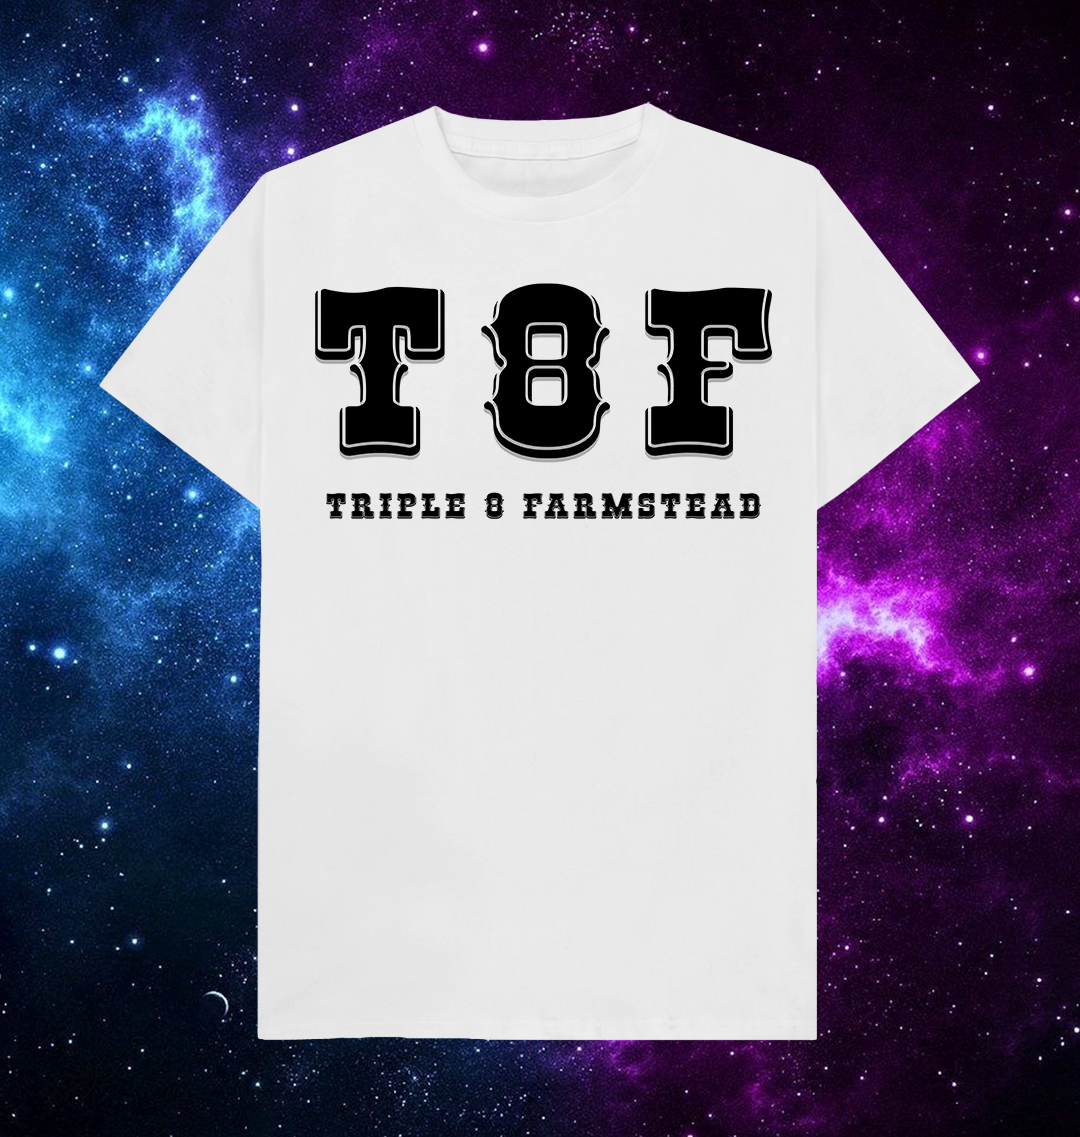 Triple 8 Farmstead - T8F - T-Shirt